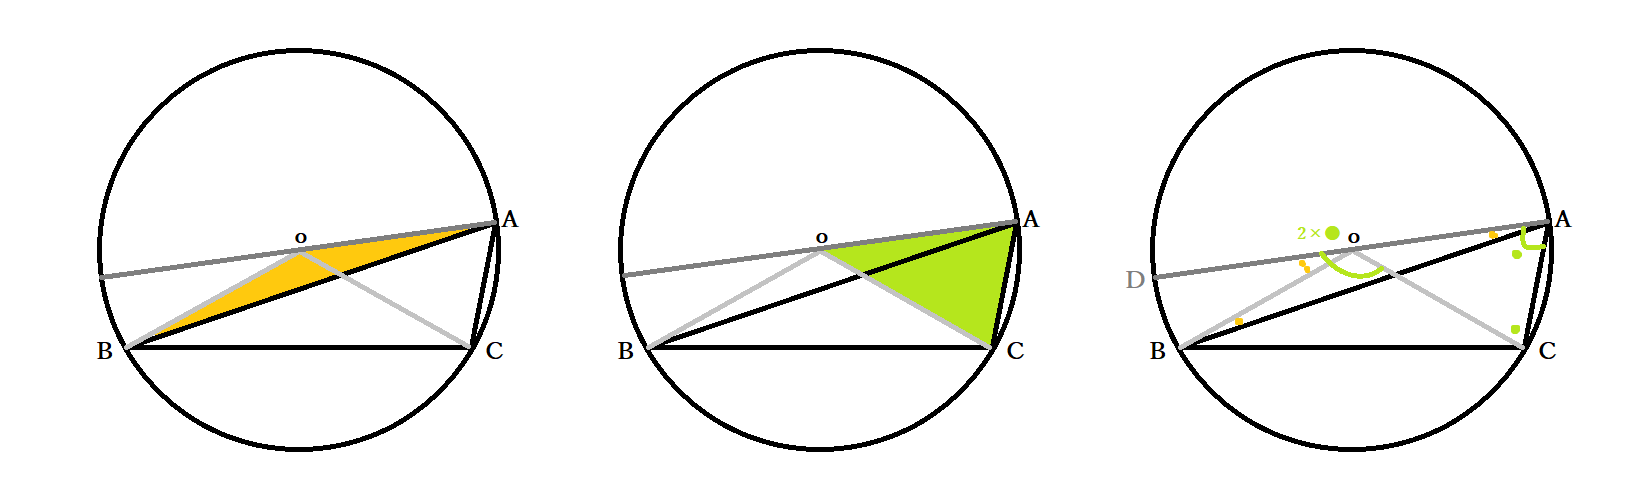 中3数学 円周角の定理とは 円周角と中心角の関係の証明法 円の性質の応用問題 中学 Curlpingの学びblog